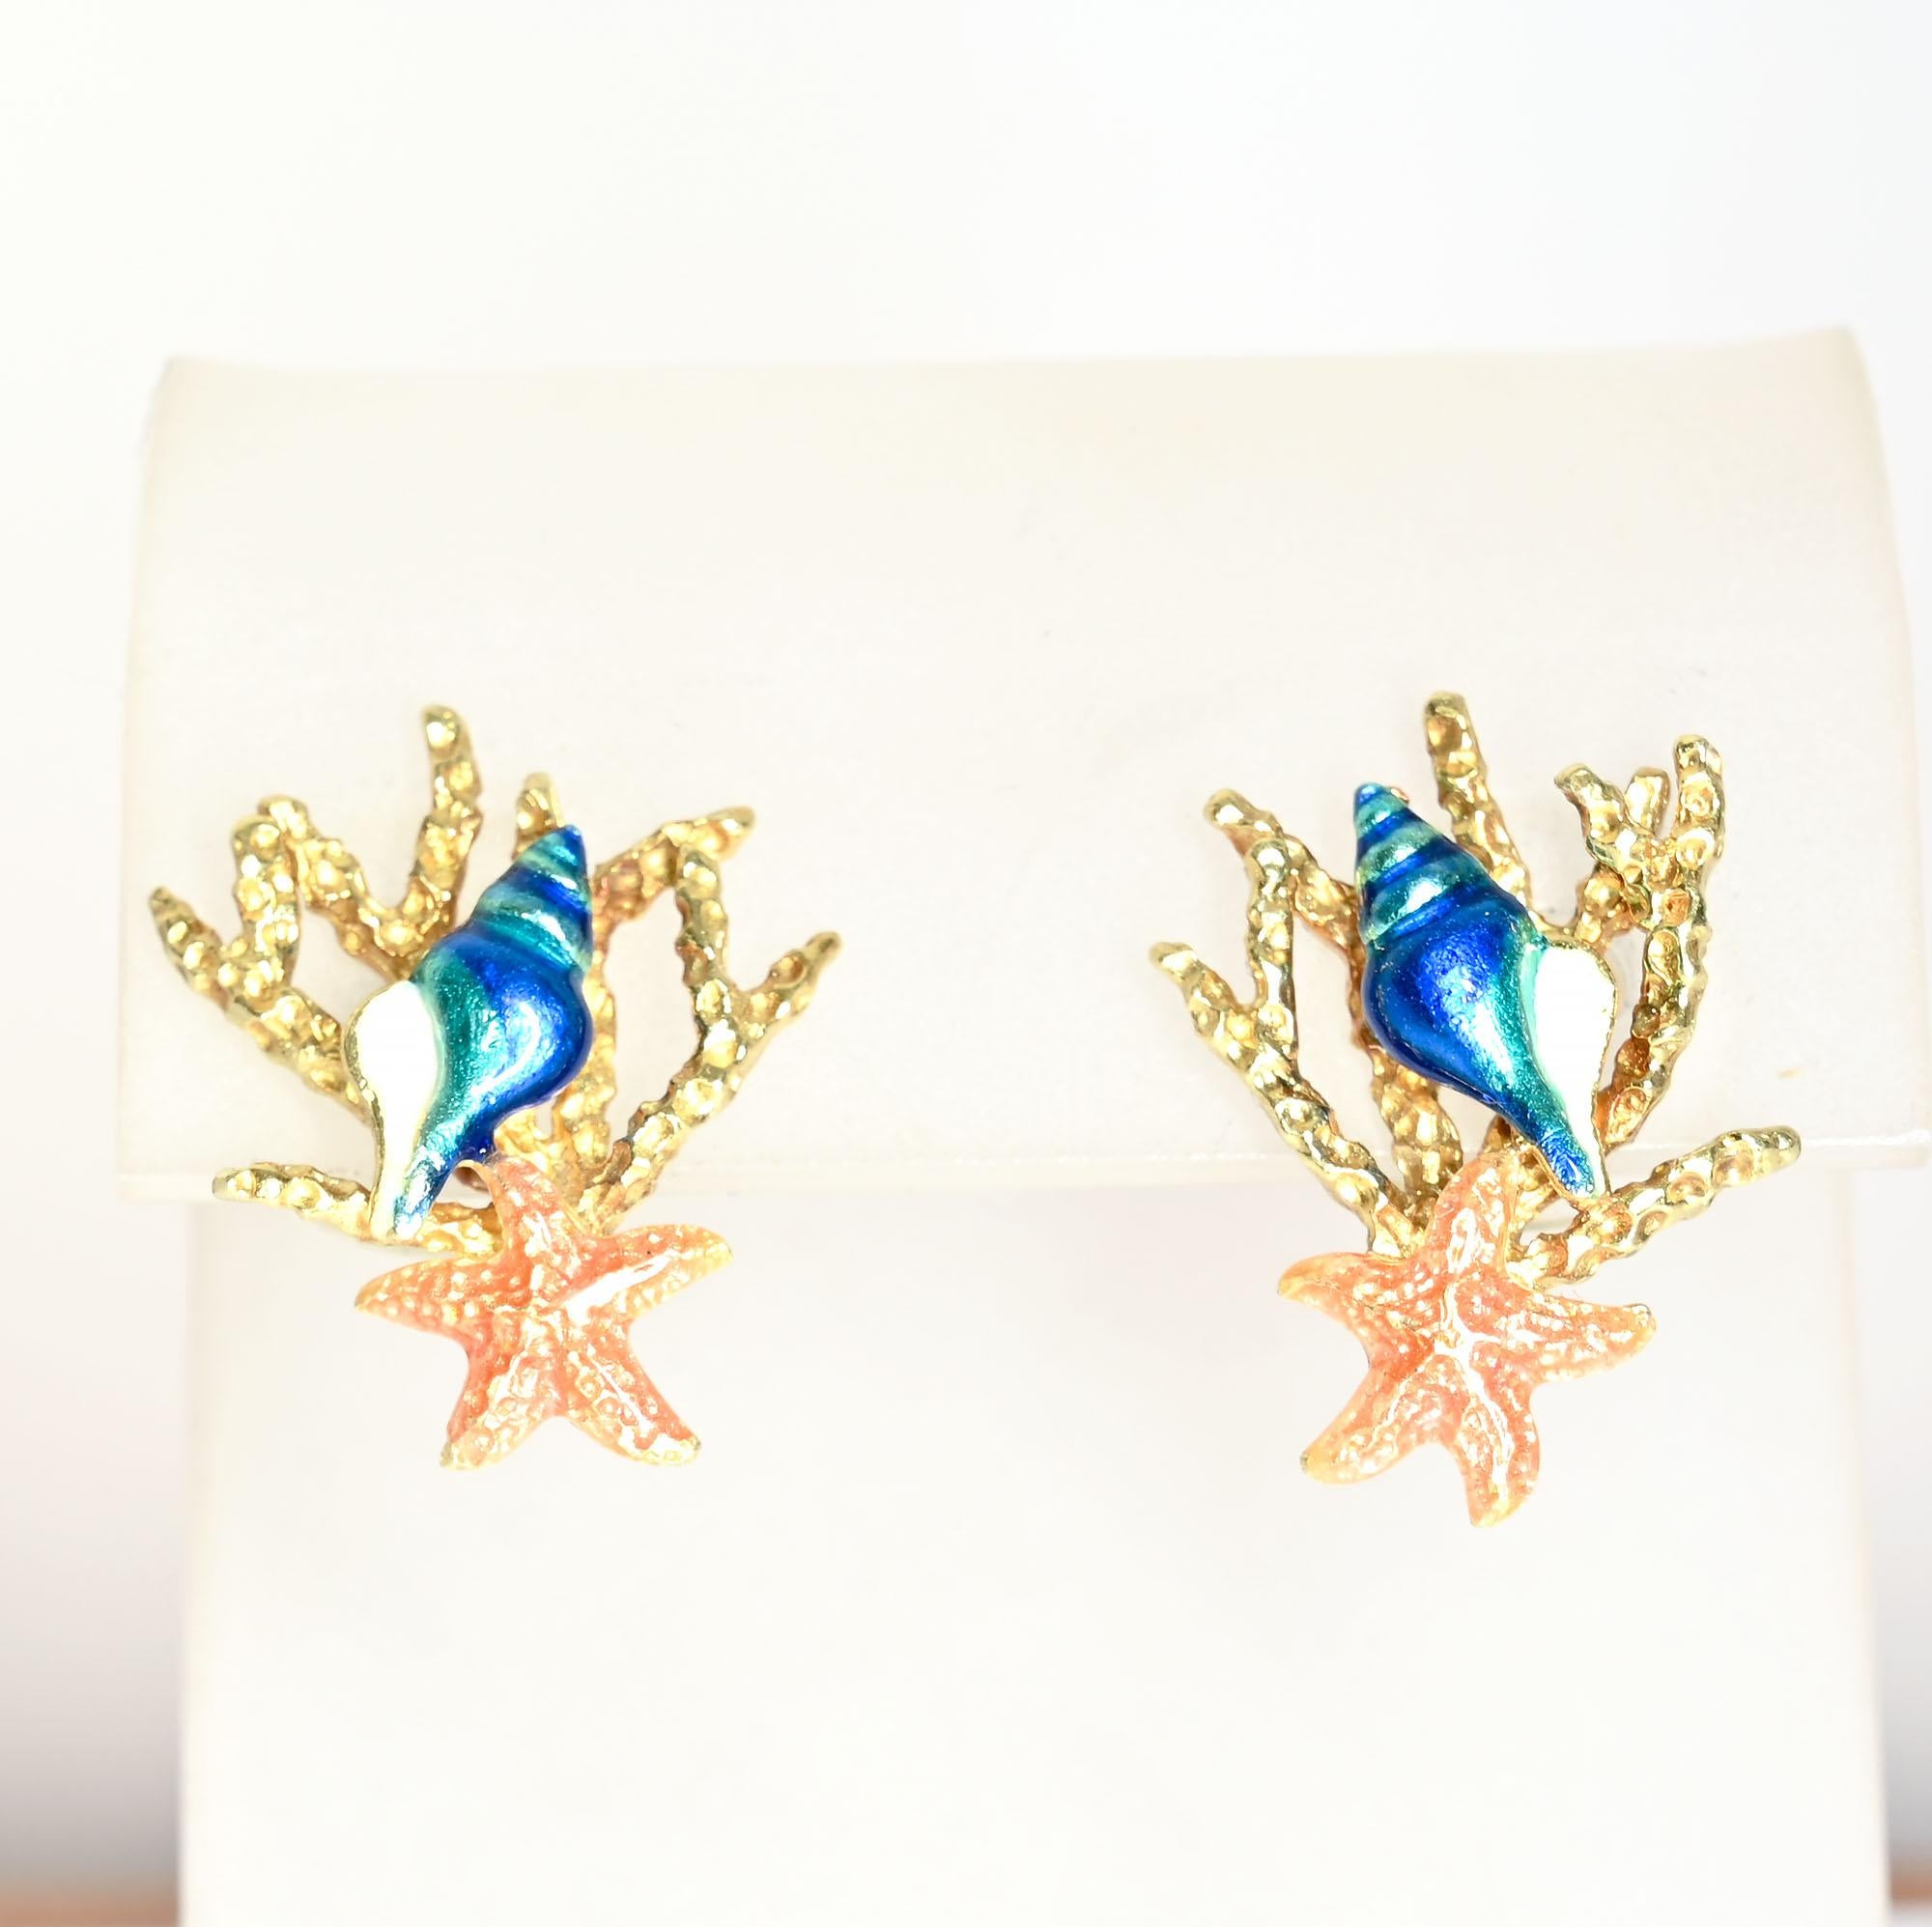 Boucles d'oreilles en émail de belle facture, chacune représentant un coquillage, une étoile de mer et un corail. Ils sont fabriqués par Kabana au Nouveau-Mexique. Le métal est de l'or 18 carats. Convient pour les dos de poteau. Les boucles